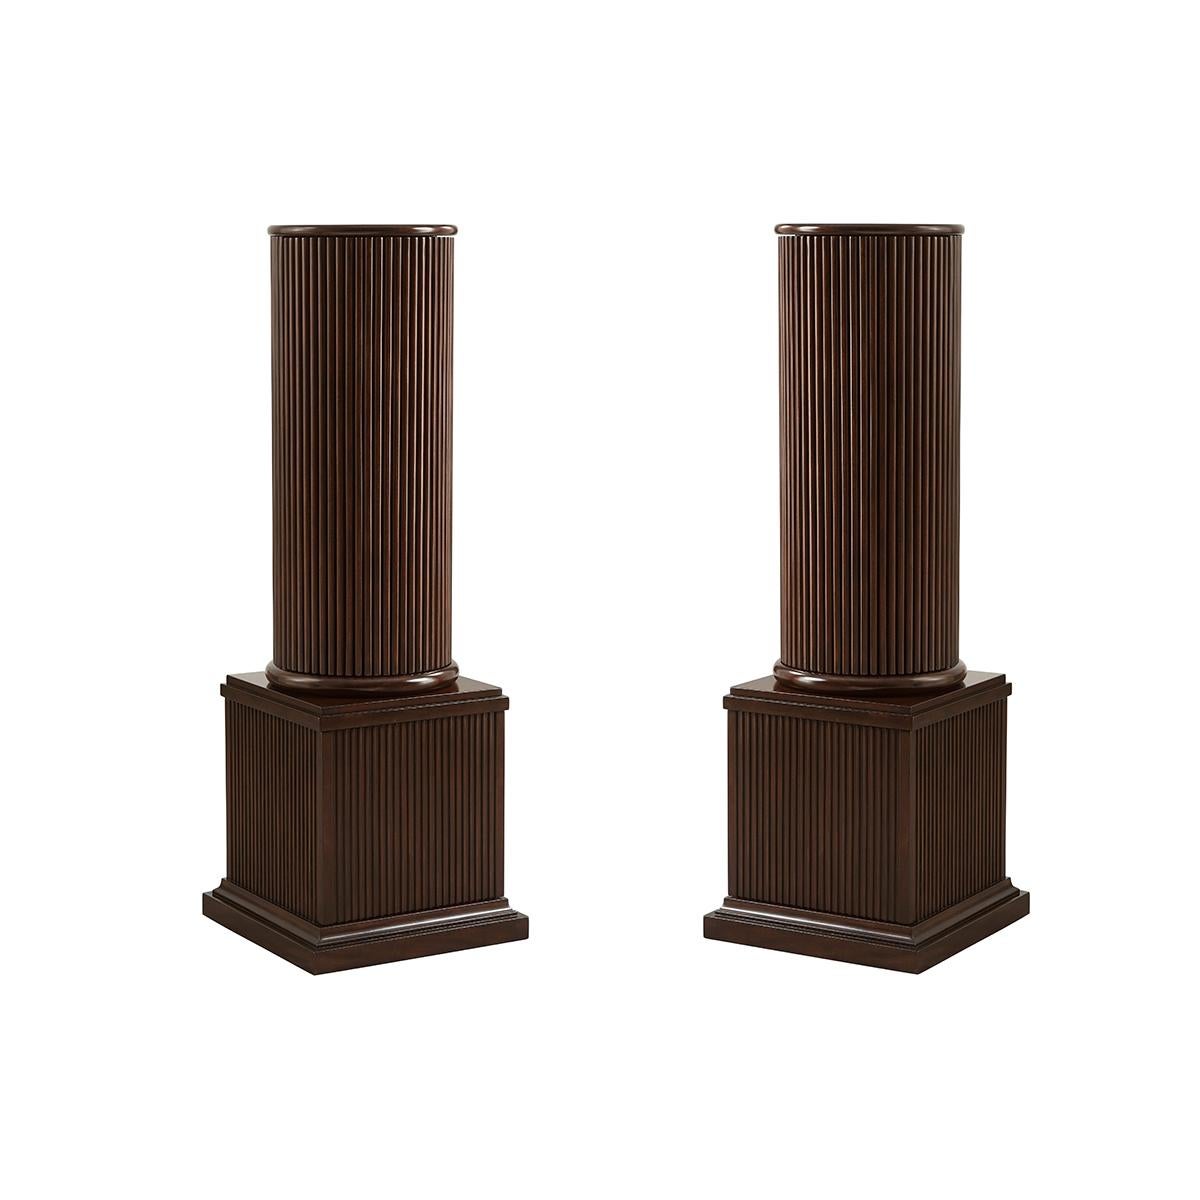 Pair of Neoclassic Column Form Pedestals